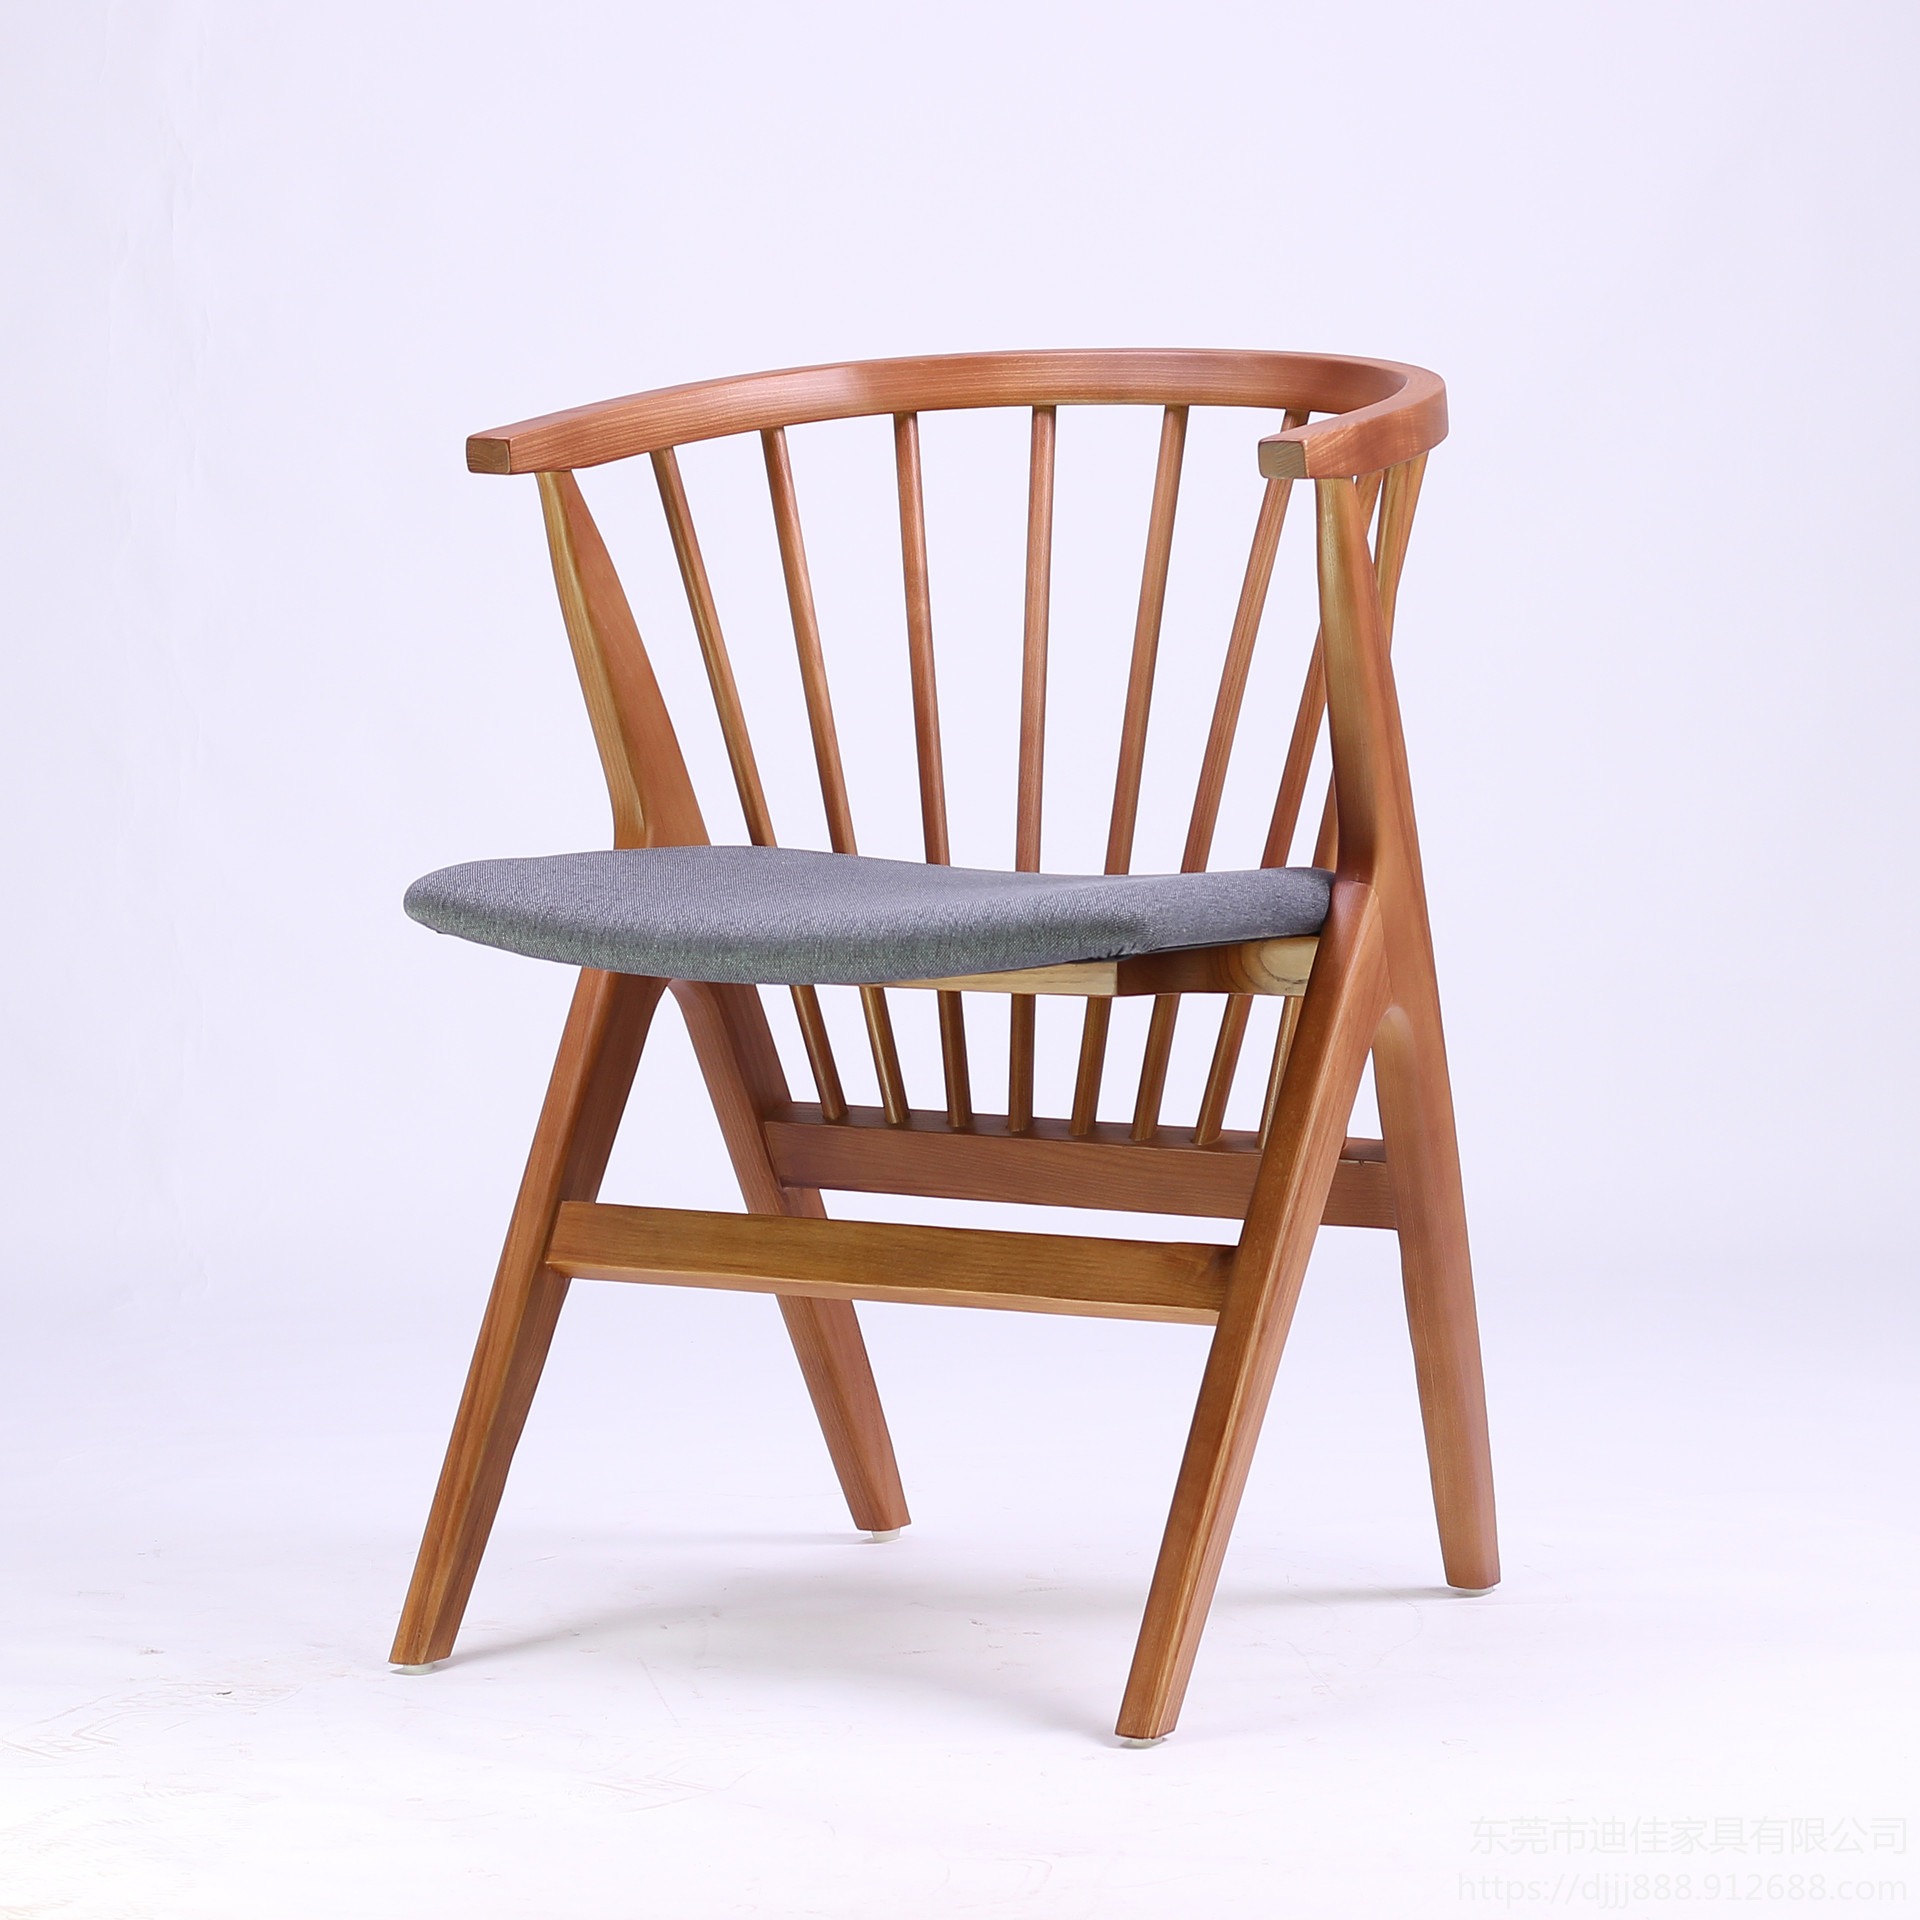 东莞实木餐桌 餐椅  实木餐椅 中餐餐椅 木质餐椅 采购工程定制餐厅家具